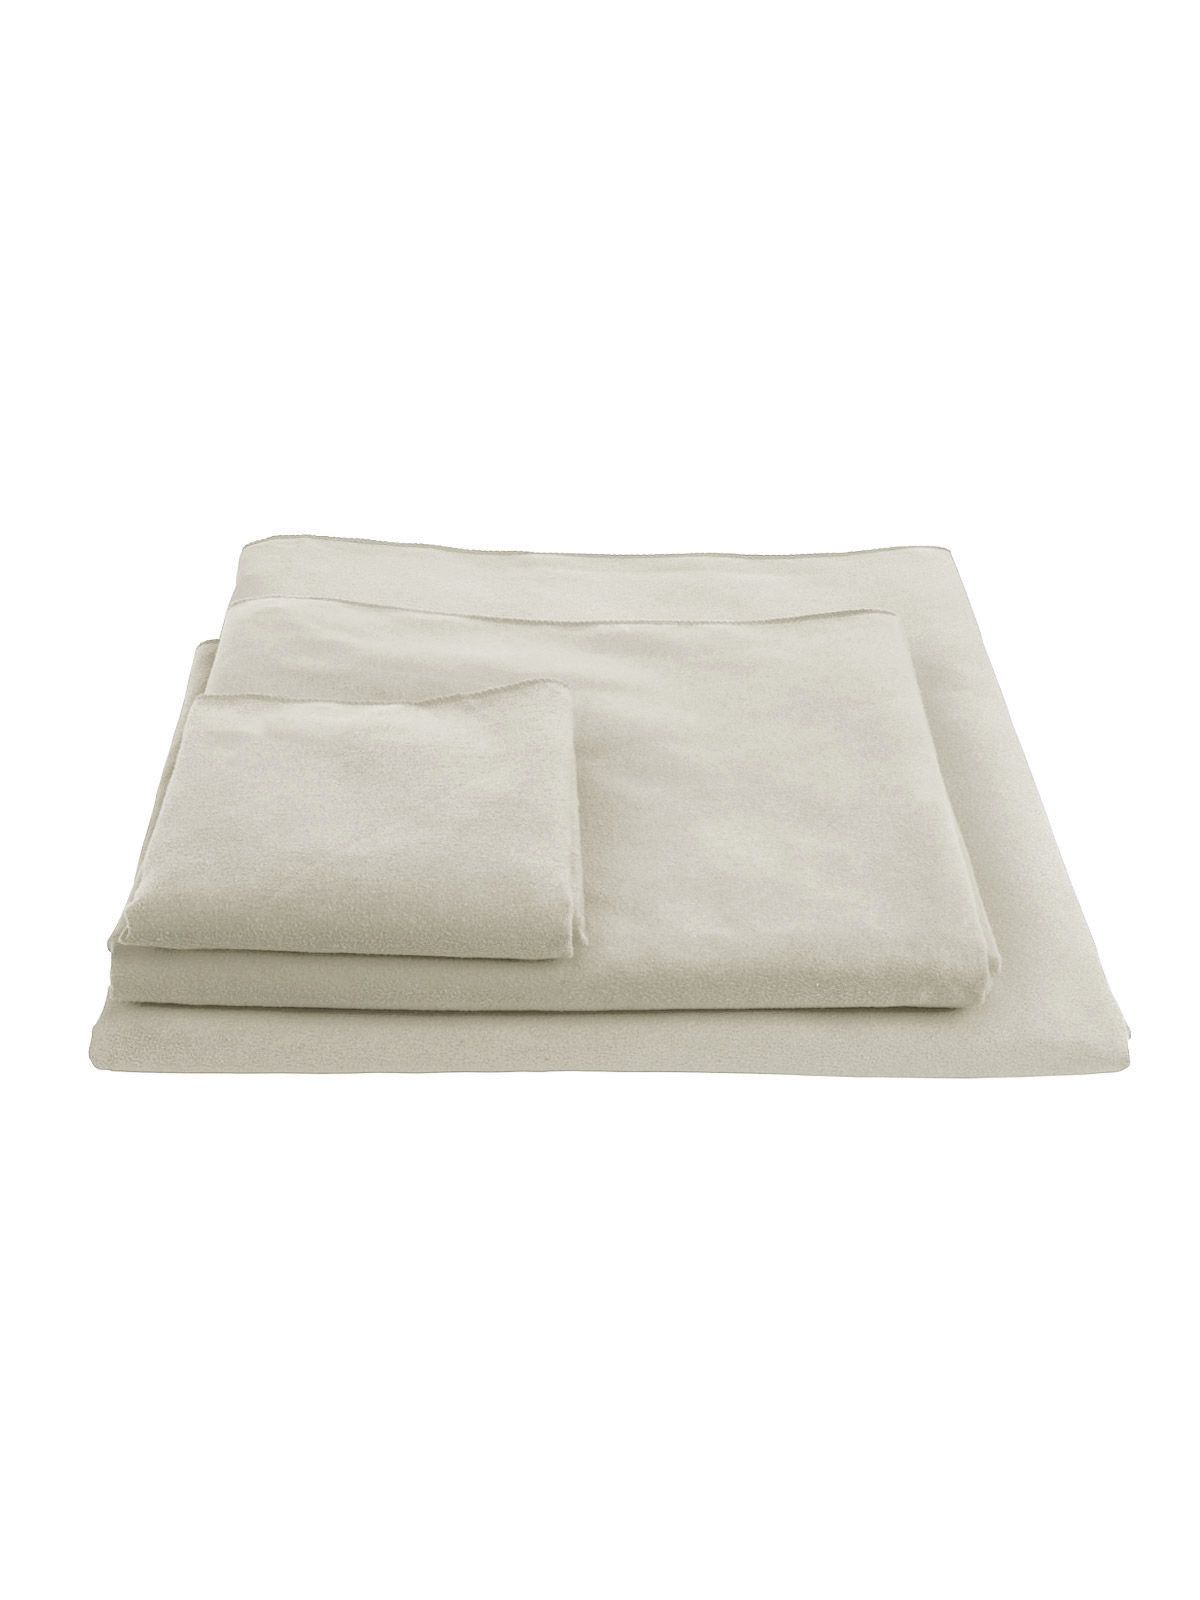 promo-towel-90x170-natural.webp